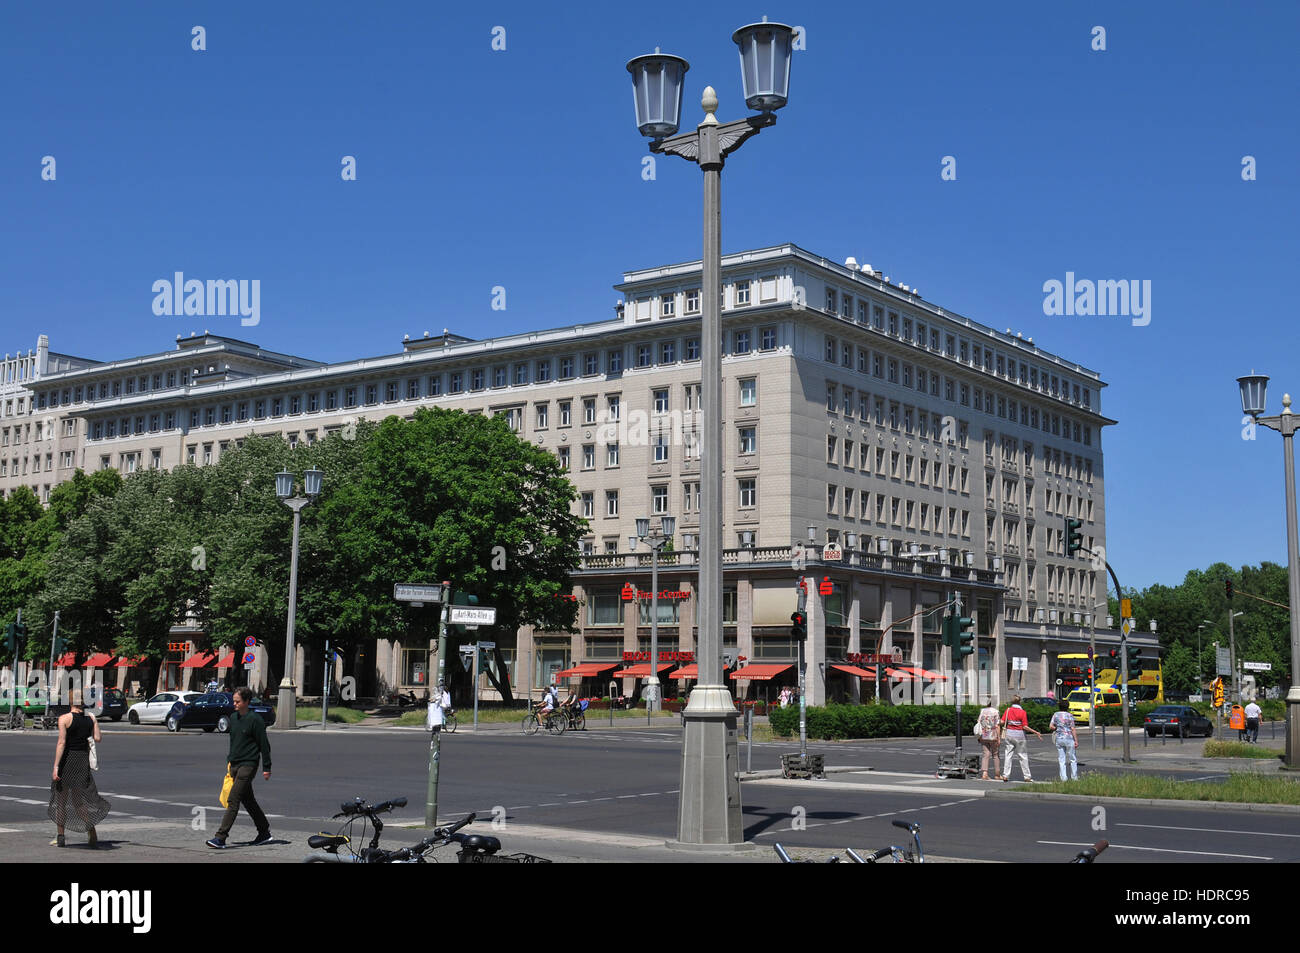 Architektur, Karl-Marx-Allee, Friedrichshain, Berlin, Deutschland Stock Photo